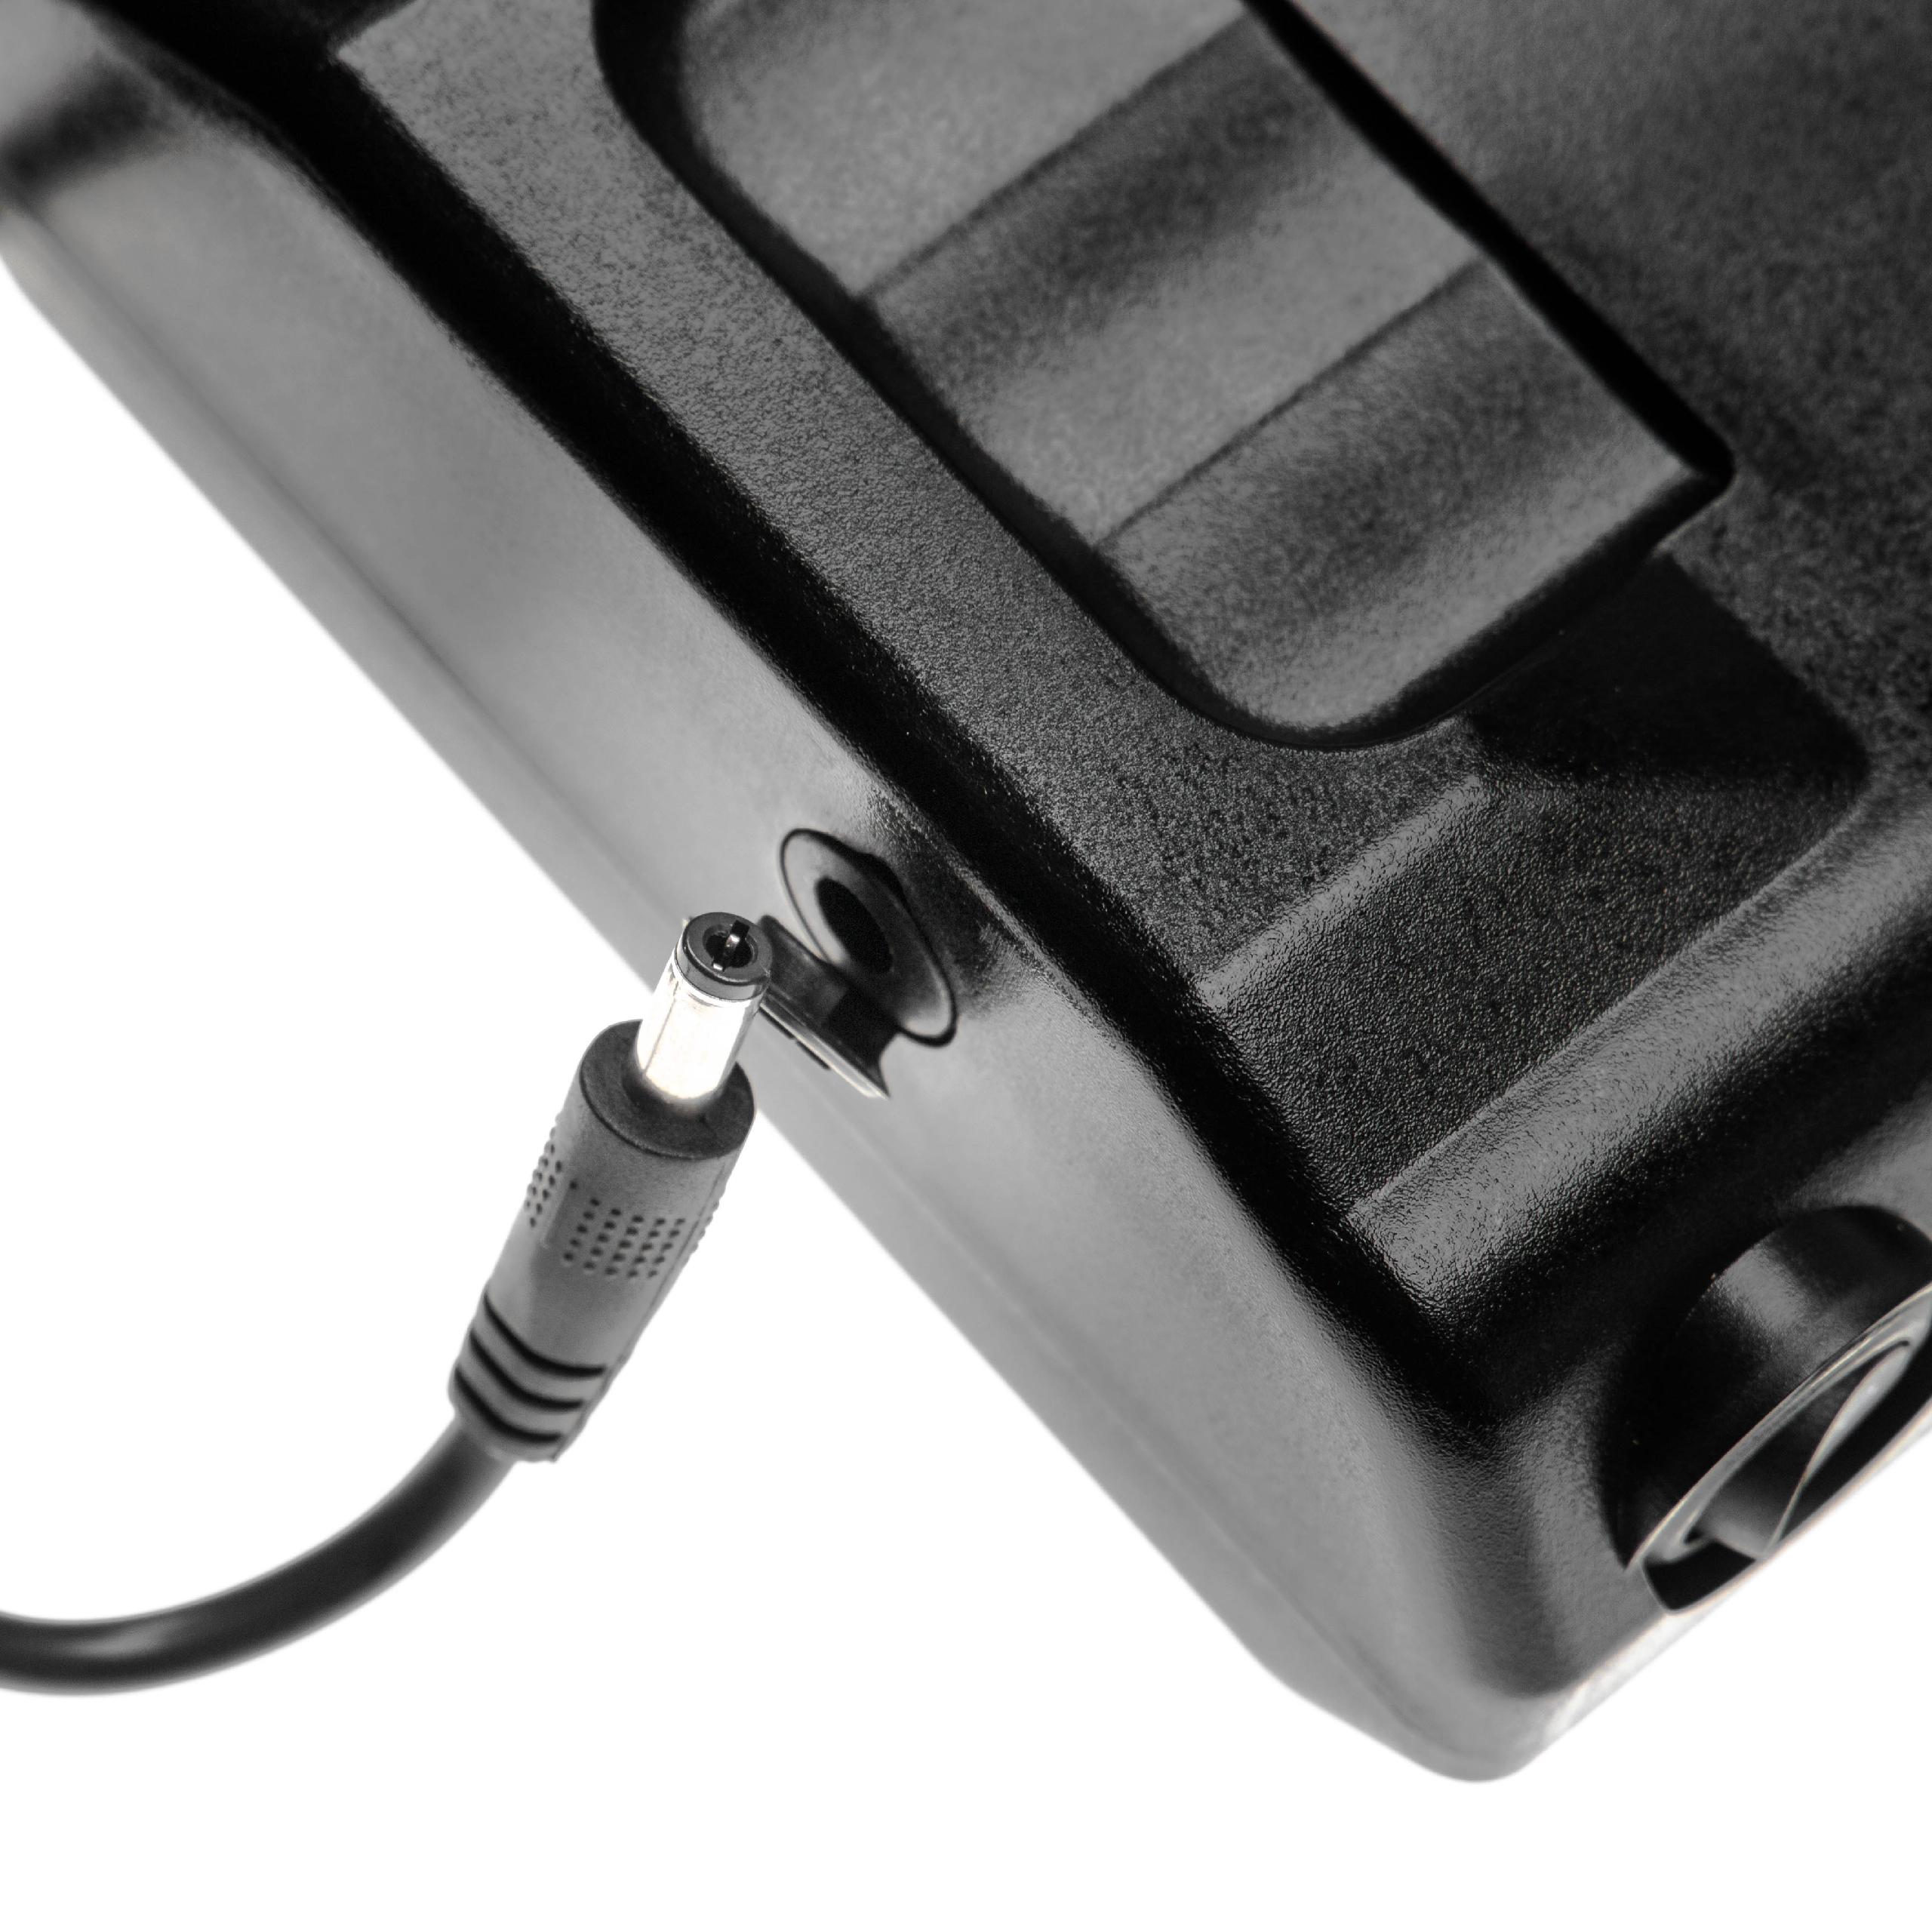 Batteria per portapacchi con sistema d'inserimento + caricatore per e-bike - 8800mAh, Li-Ion